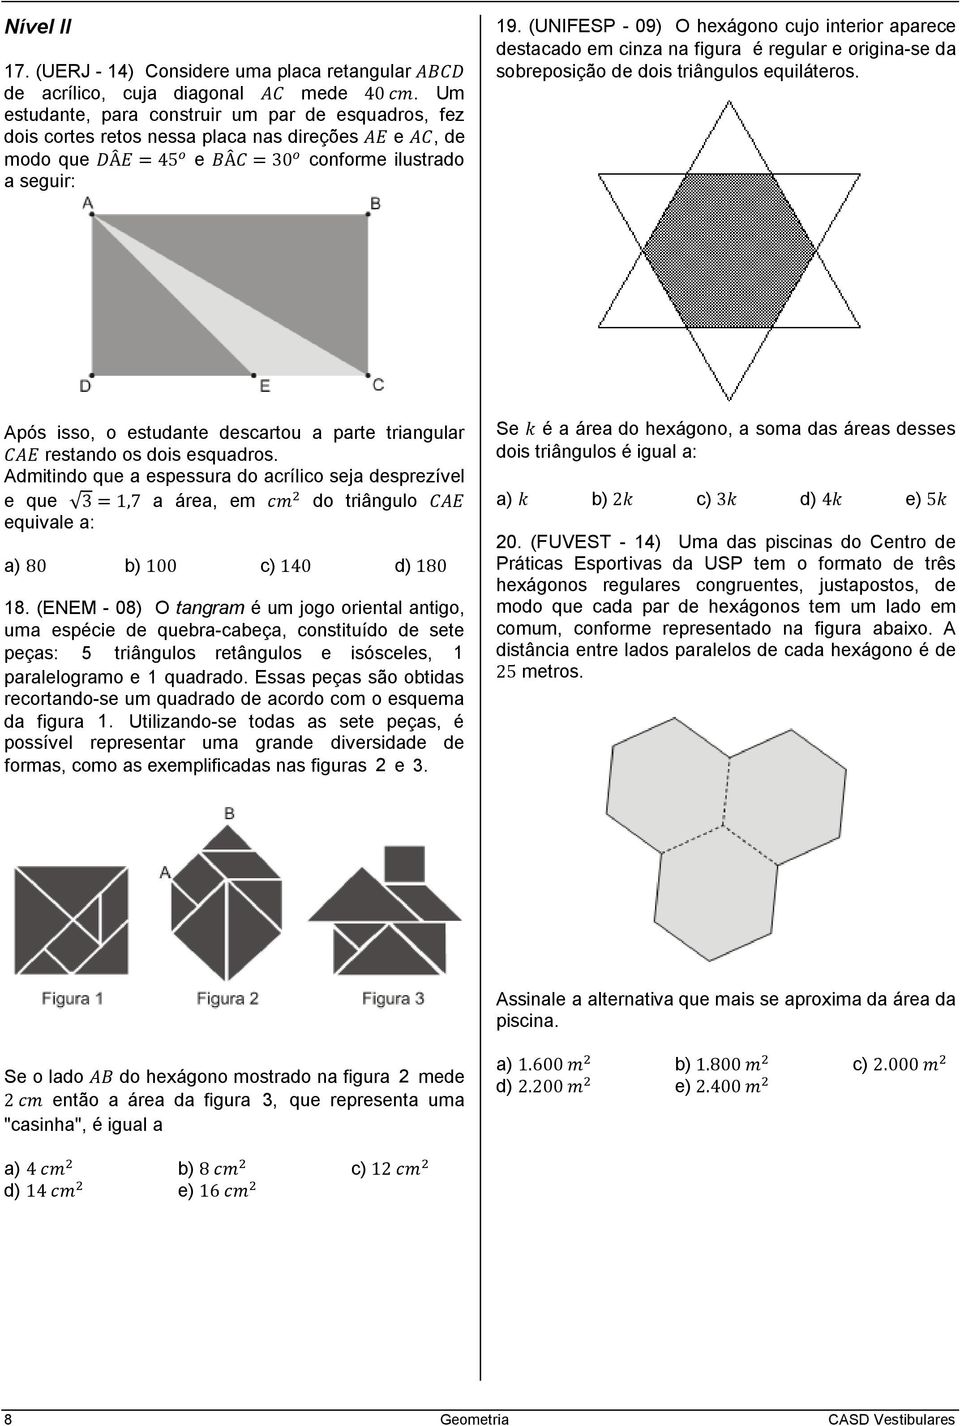 (UNIFESP - 09) O hexágono cujo interior aparece destacado em cinza na figura é regular e origina-se da sobreposição de dois triângulos equiláteros.